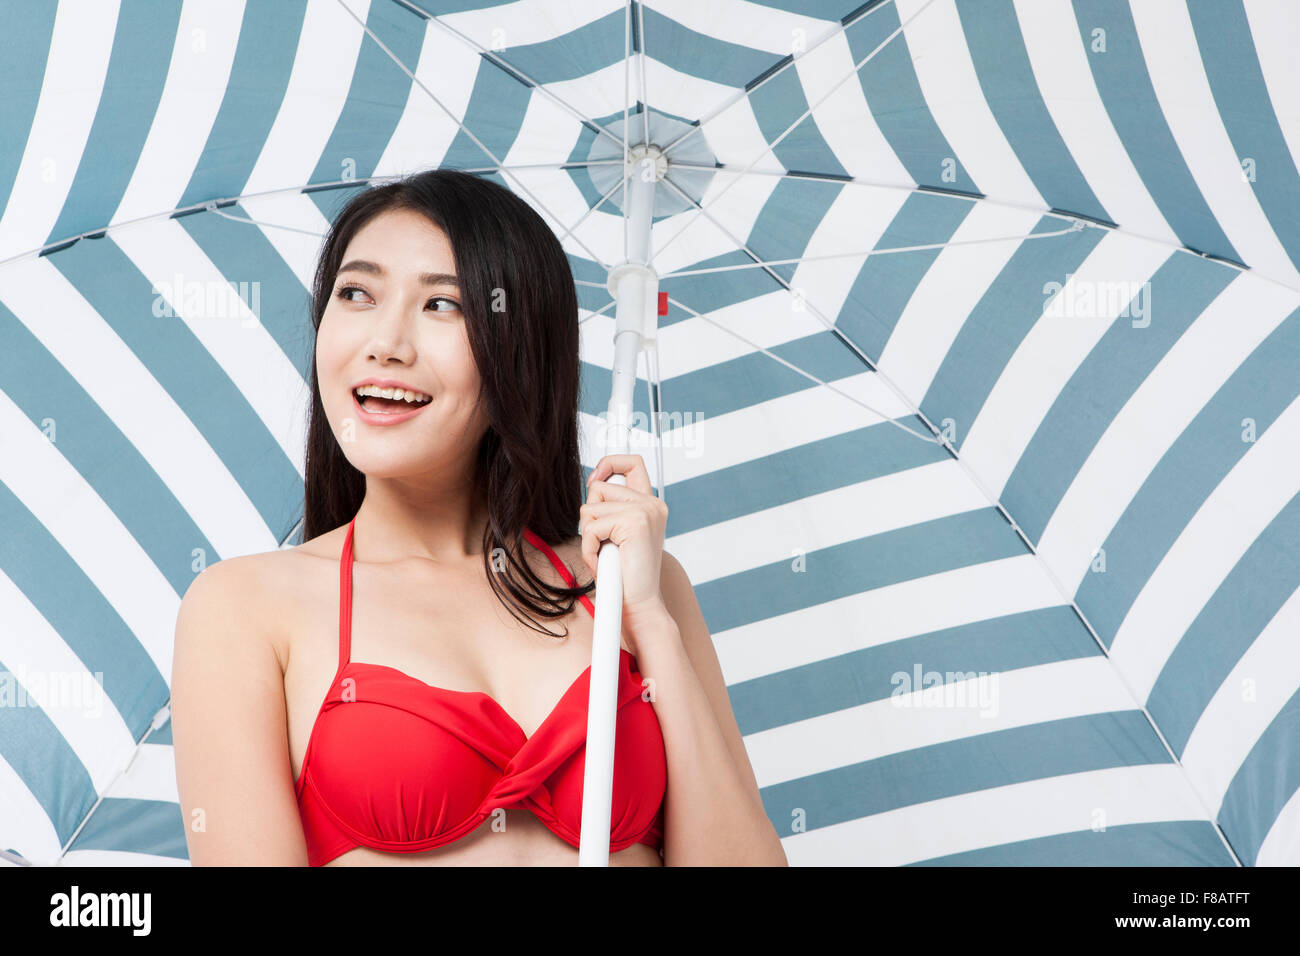 Ritratto di donna in bikini tenendo un ombrellone con un sorriso Foto Stock